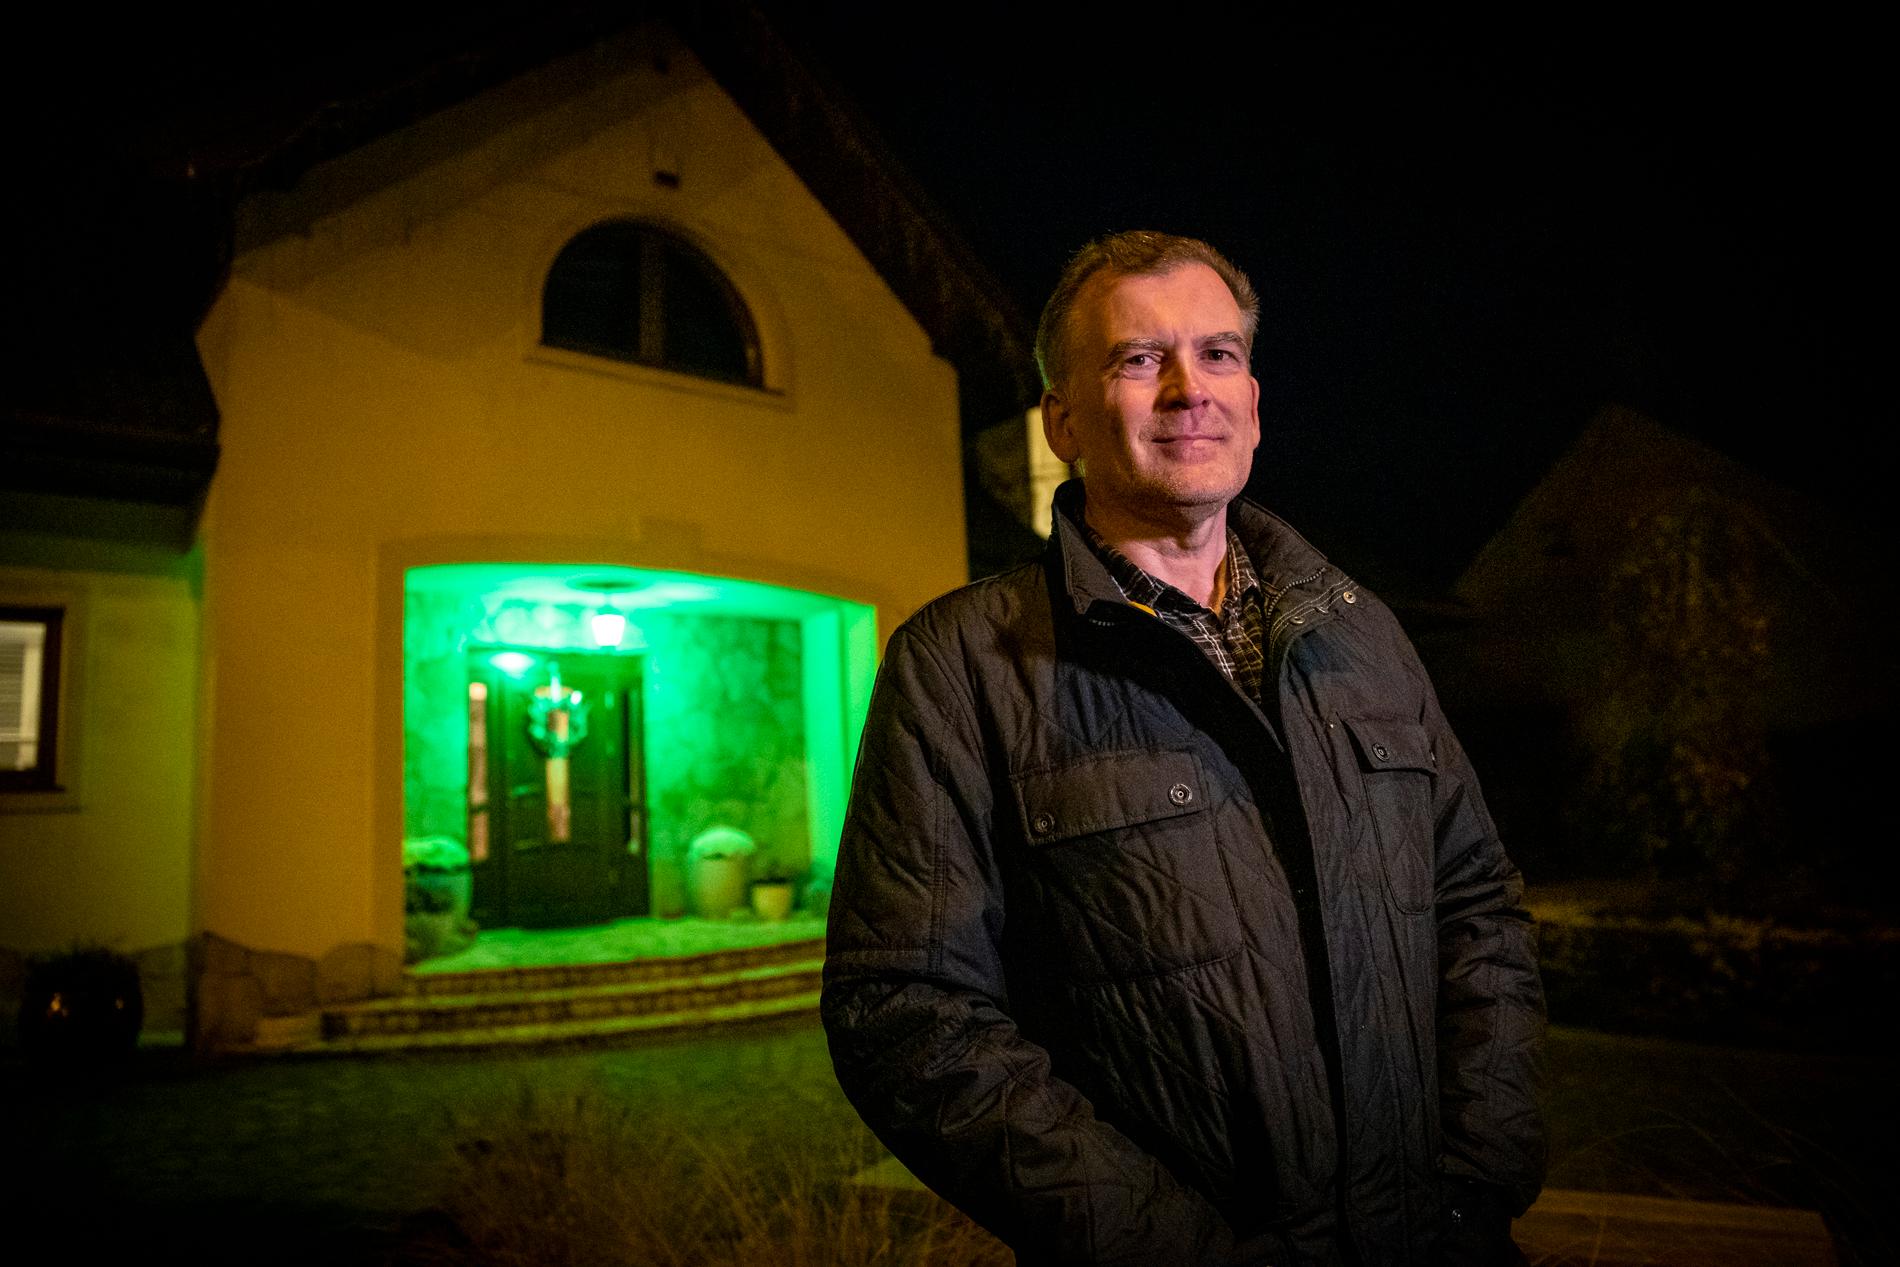 När Marek Nazarko tänder sin gröna lampa signalerar han att migranter kan leta sig dit för att få hjälp.